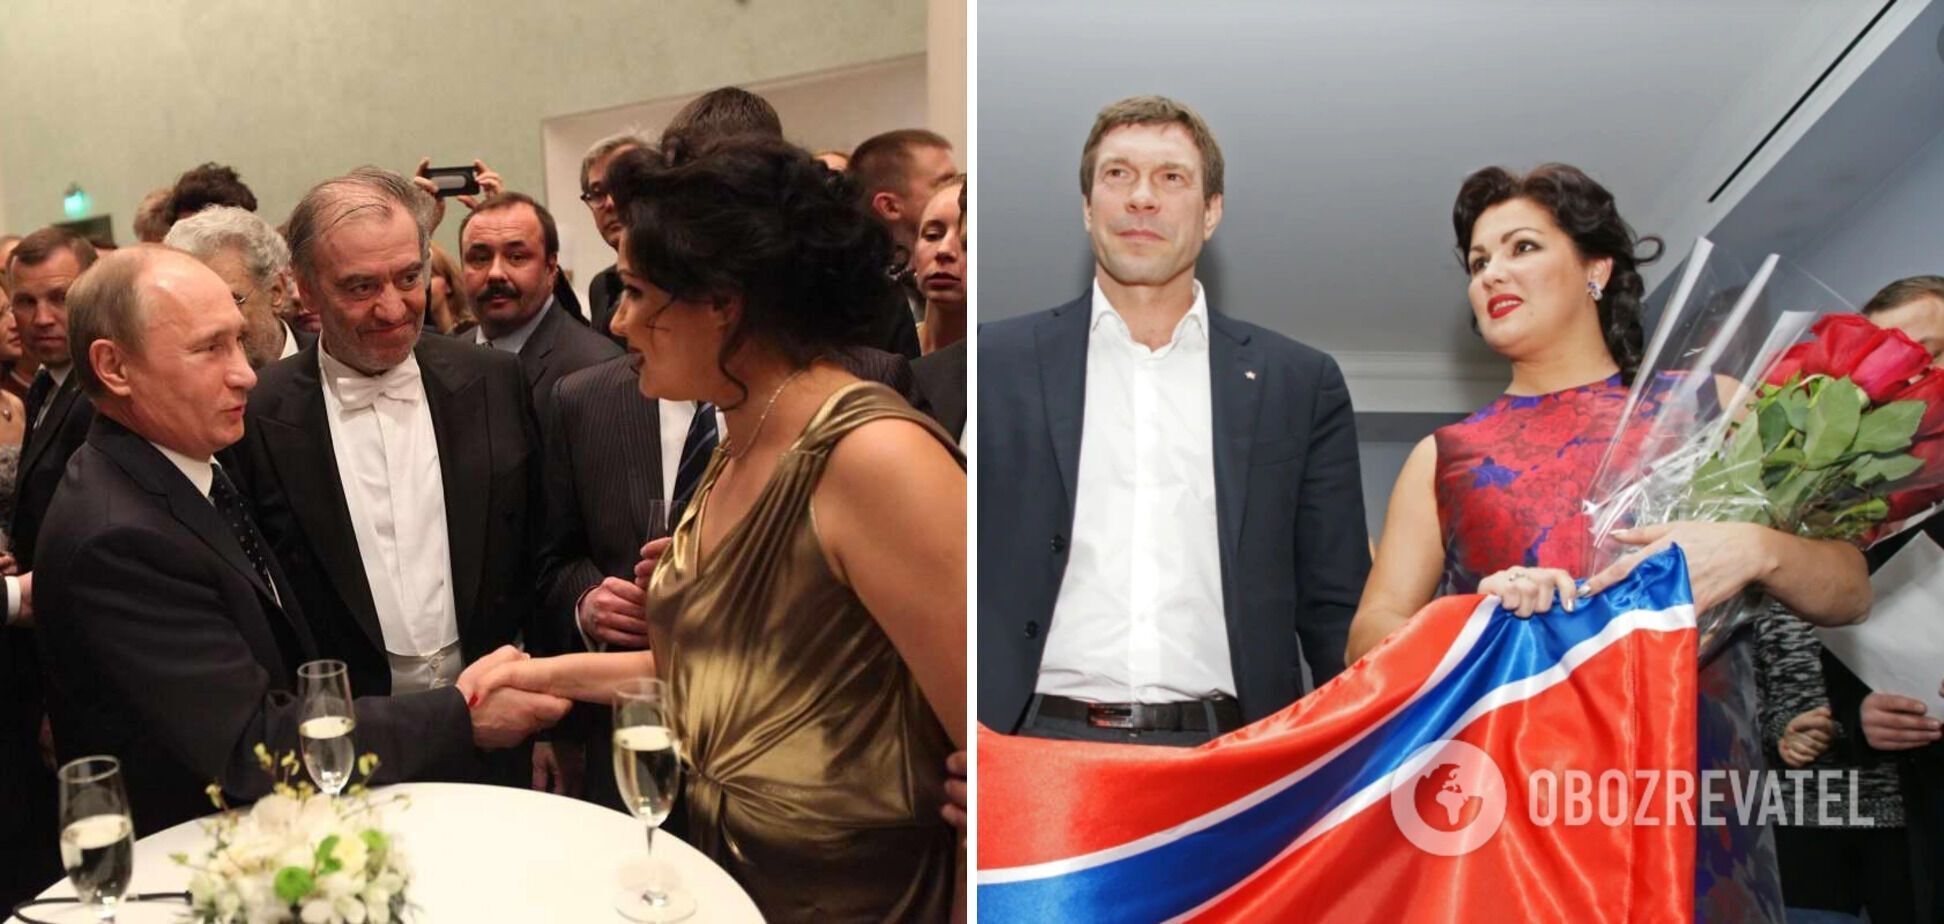 Ганна Нетребко була довіреною особою Володимира Путіна на виборах